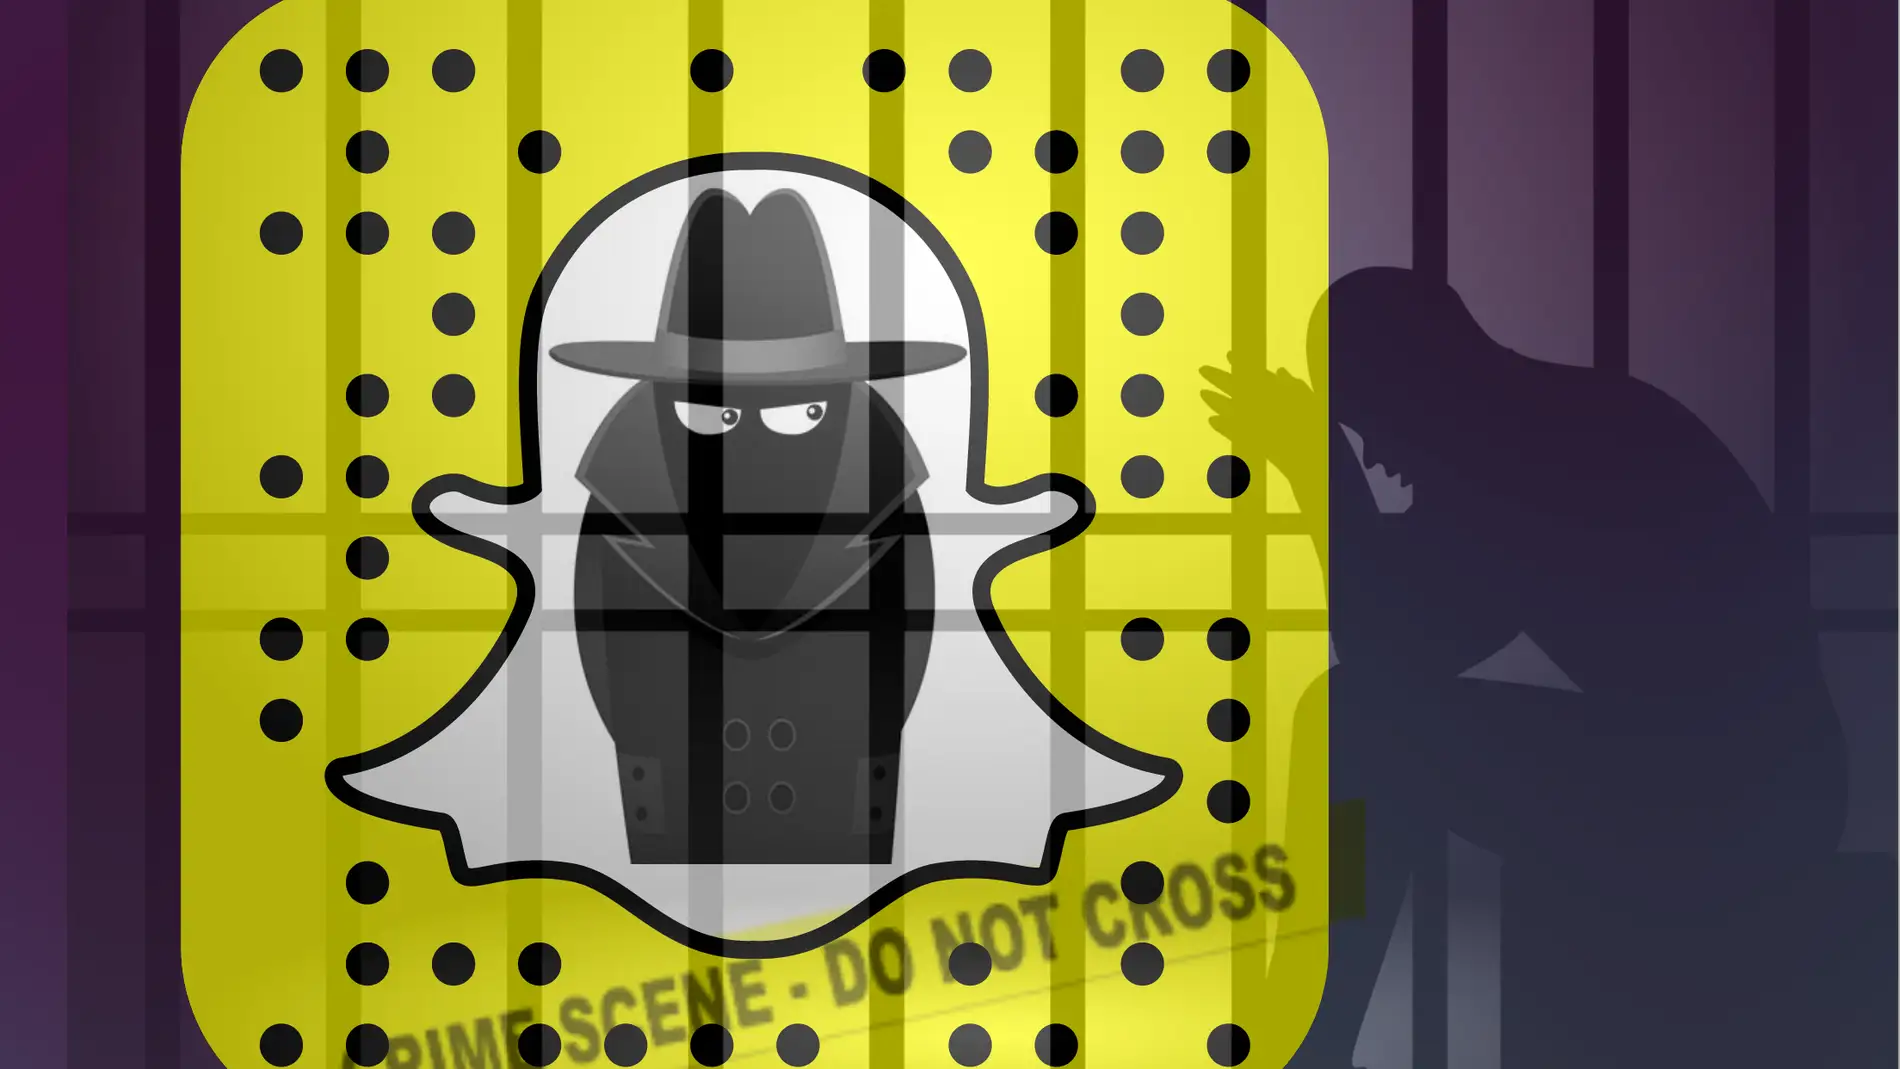 Lo dice Snapchat: no compartas contenido que no quieras que guarden